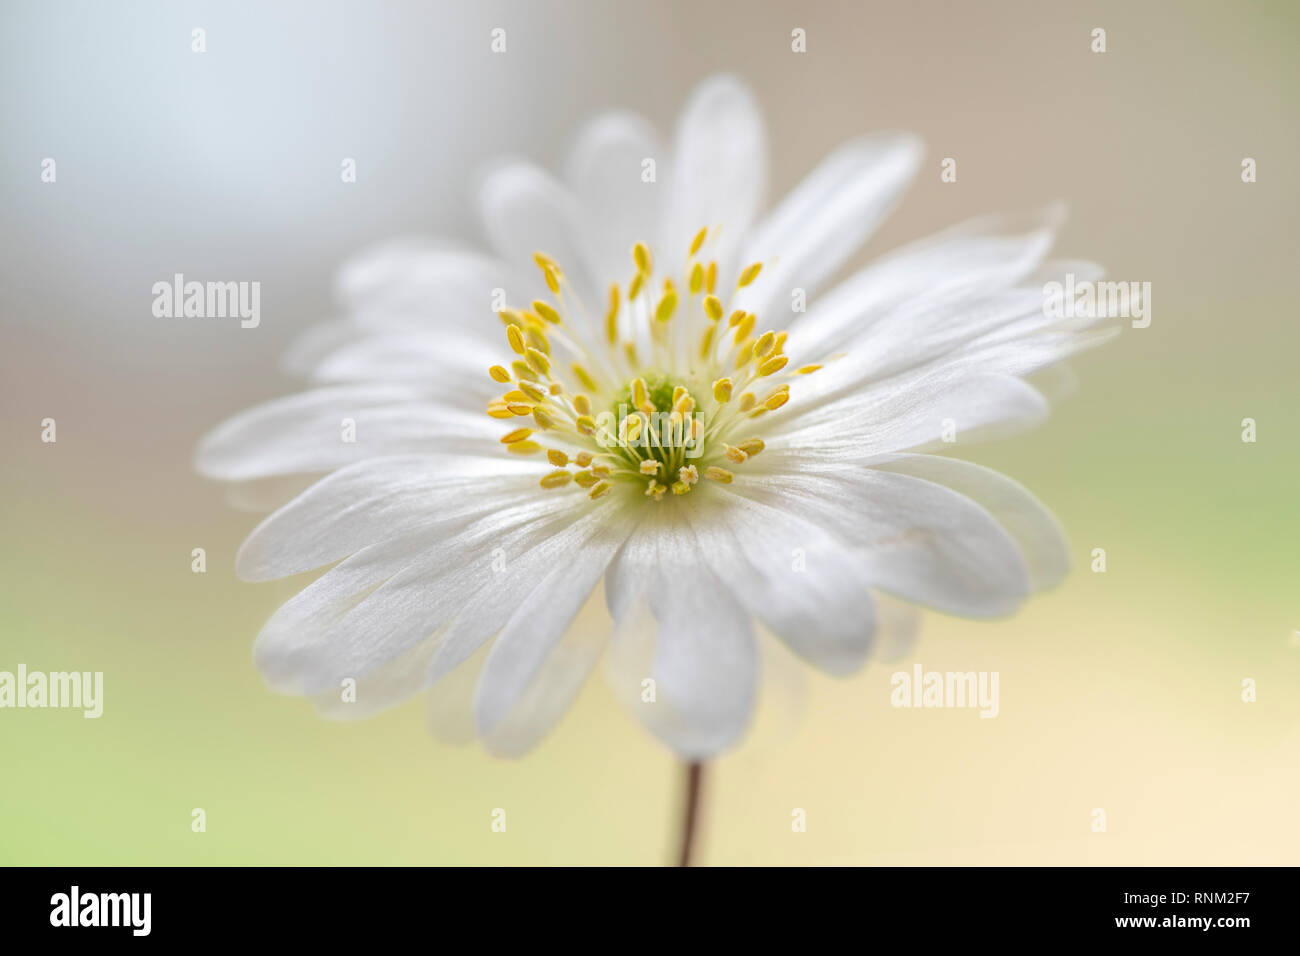 Imagen cercana de la hermosa primavera, flor blanca de Anemone blanda también conocido como los Balcanes, anémona Grecian windflower o invierno windflower Foto de stock